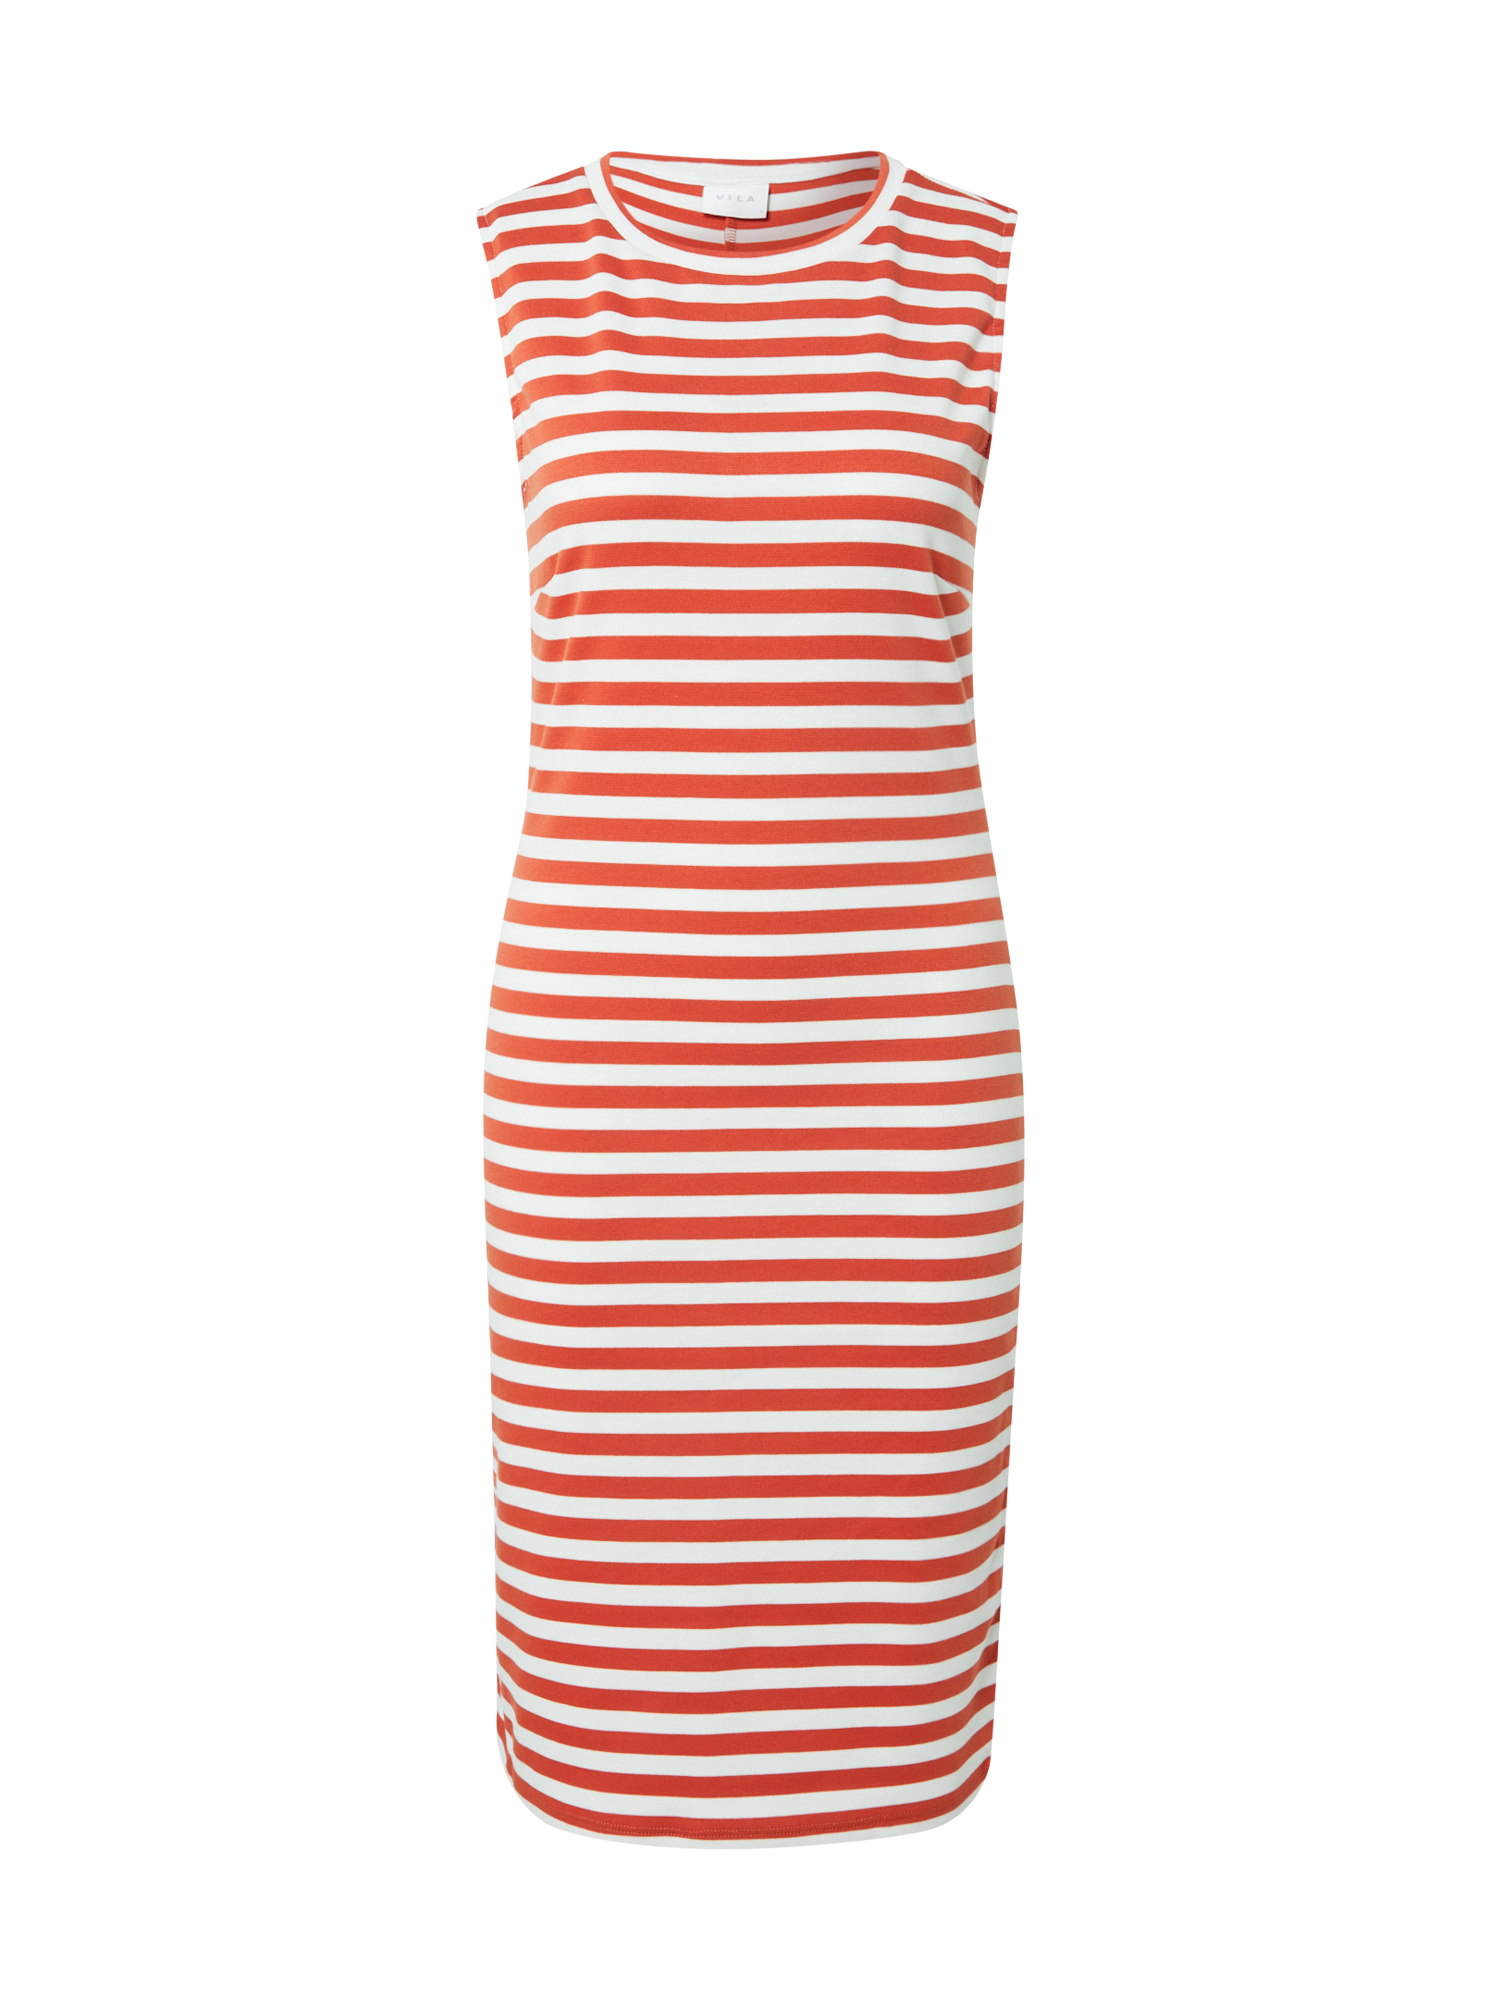 Odzież Kobiety VILA Letnia sukienka TINNY w kolorze Rdzawobrązowym 